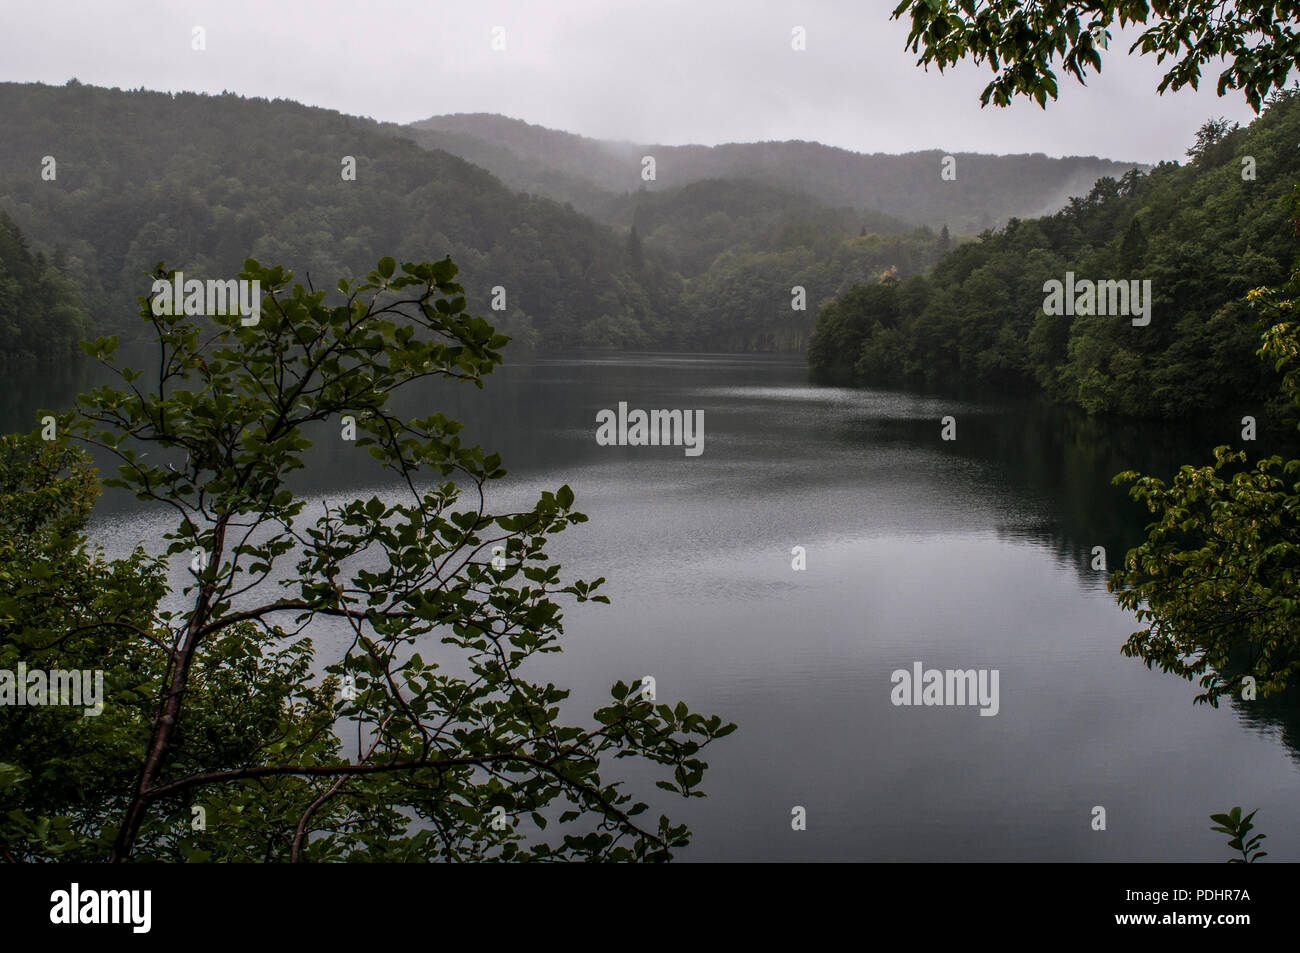 Croacia: la vegetación y el lago en el Parque Nacional de Plitvice, uno de los más antiguos y famosos parques en el Estado en la frontera con Bosnia Herzegovina Foto de stock